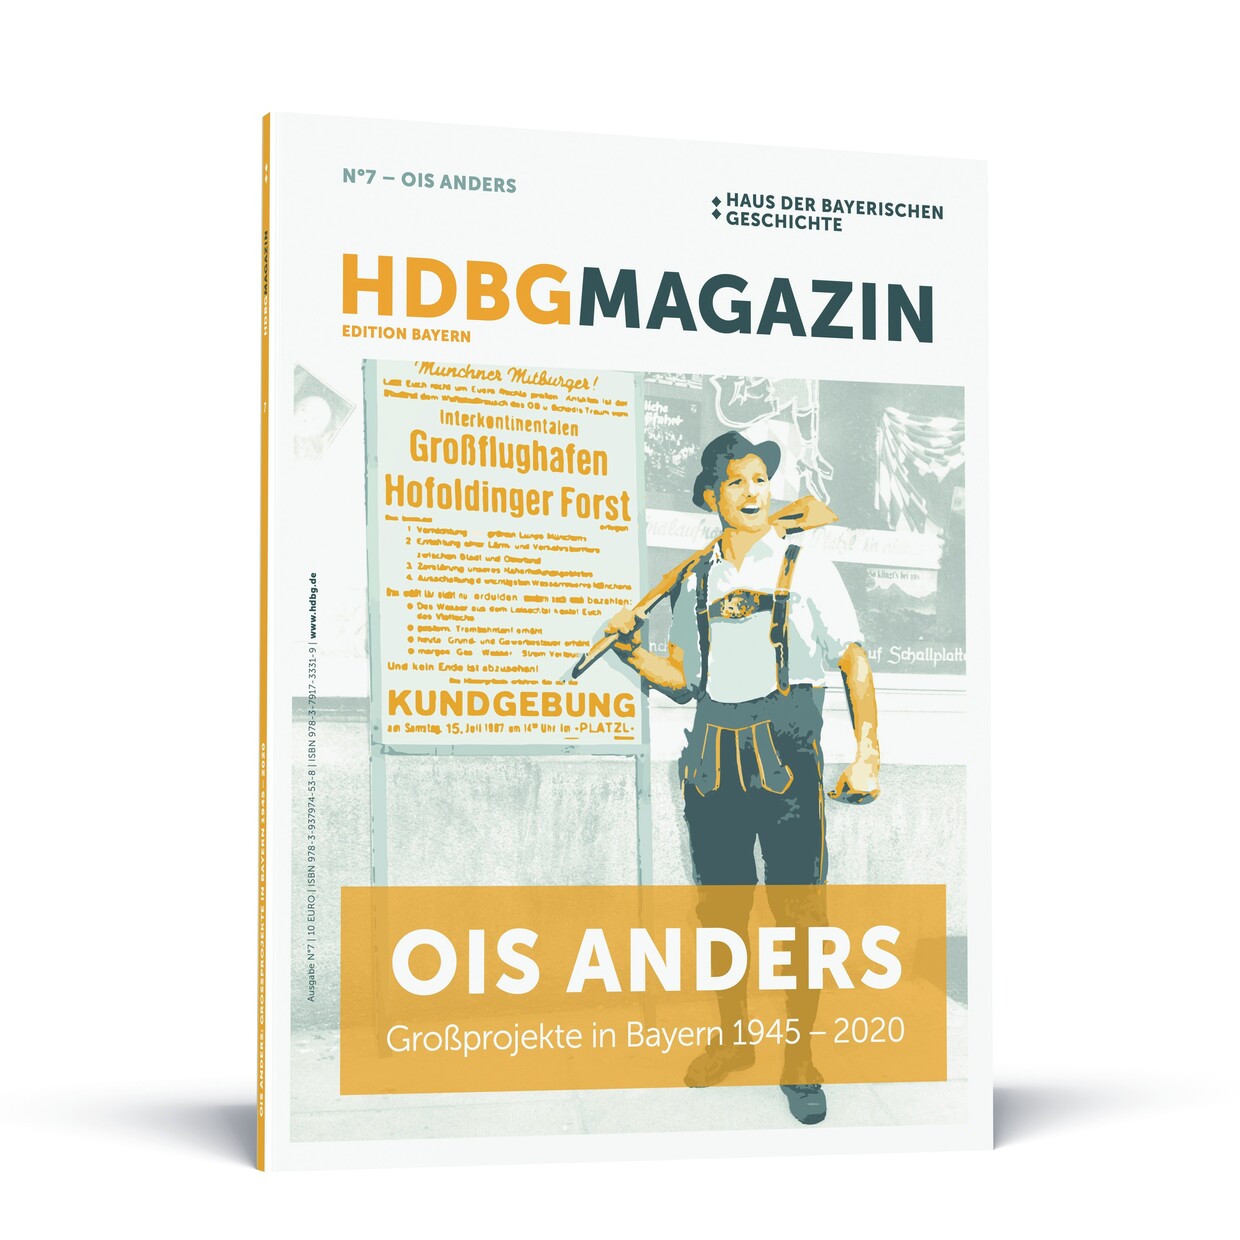 Das HDBG Magazin Nr. 7 "Ois anders: Großrpoejekte in Bayern 1945 - 2020" © HdBG| Layout: FRIENDS – Menschen Marken Medien